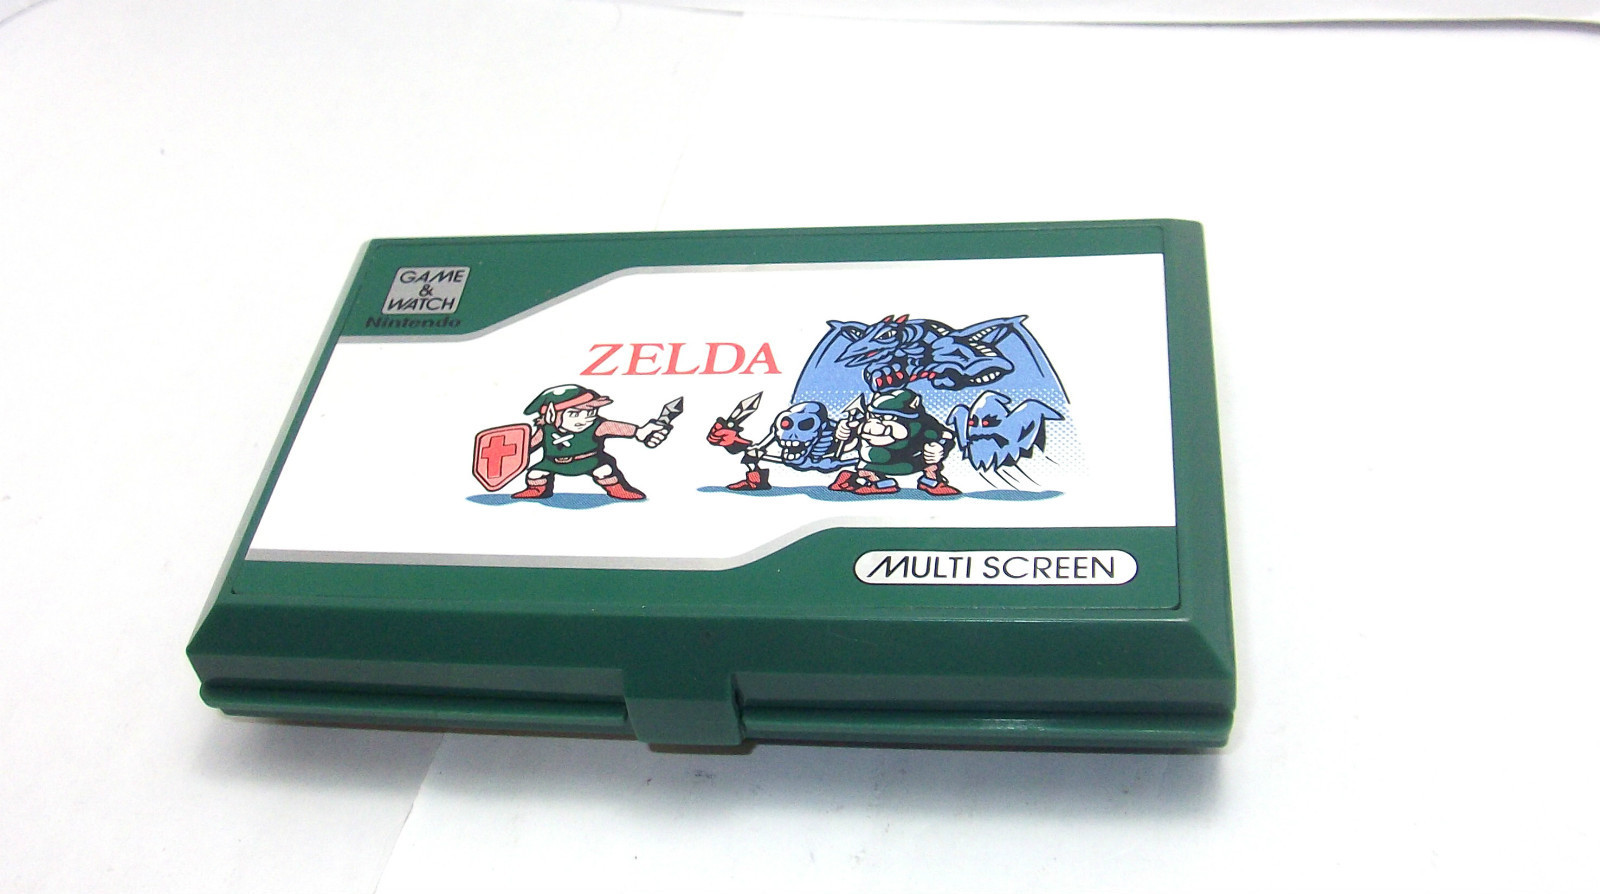 Console de Zelda Game and Watch